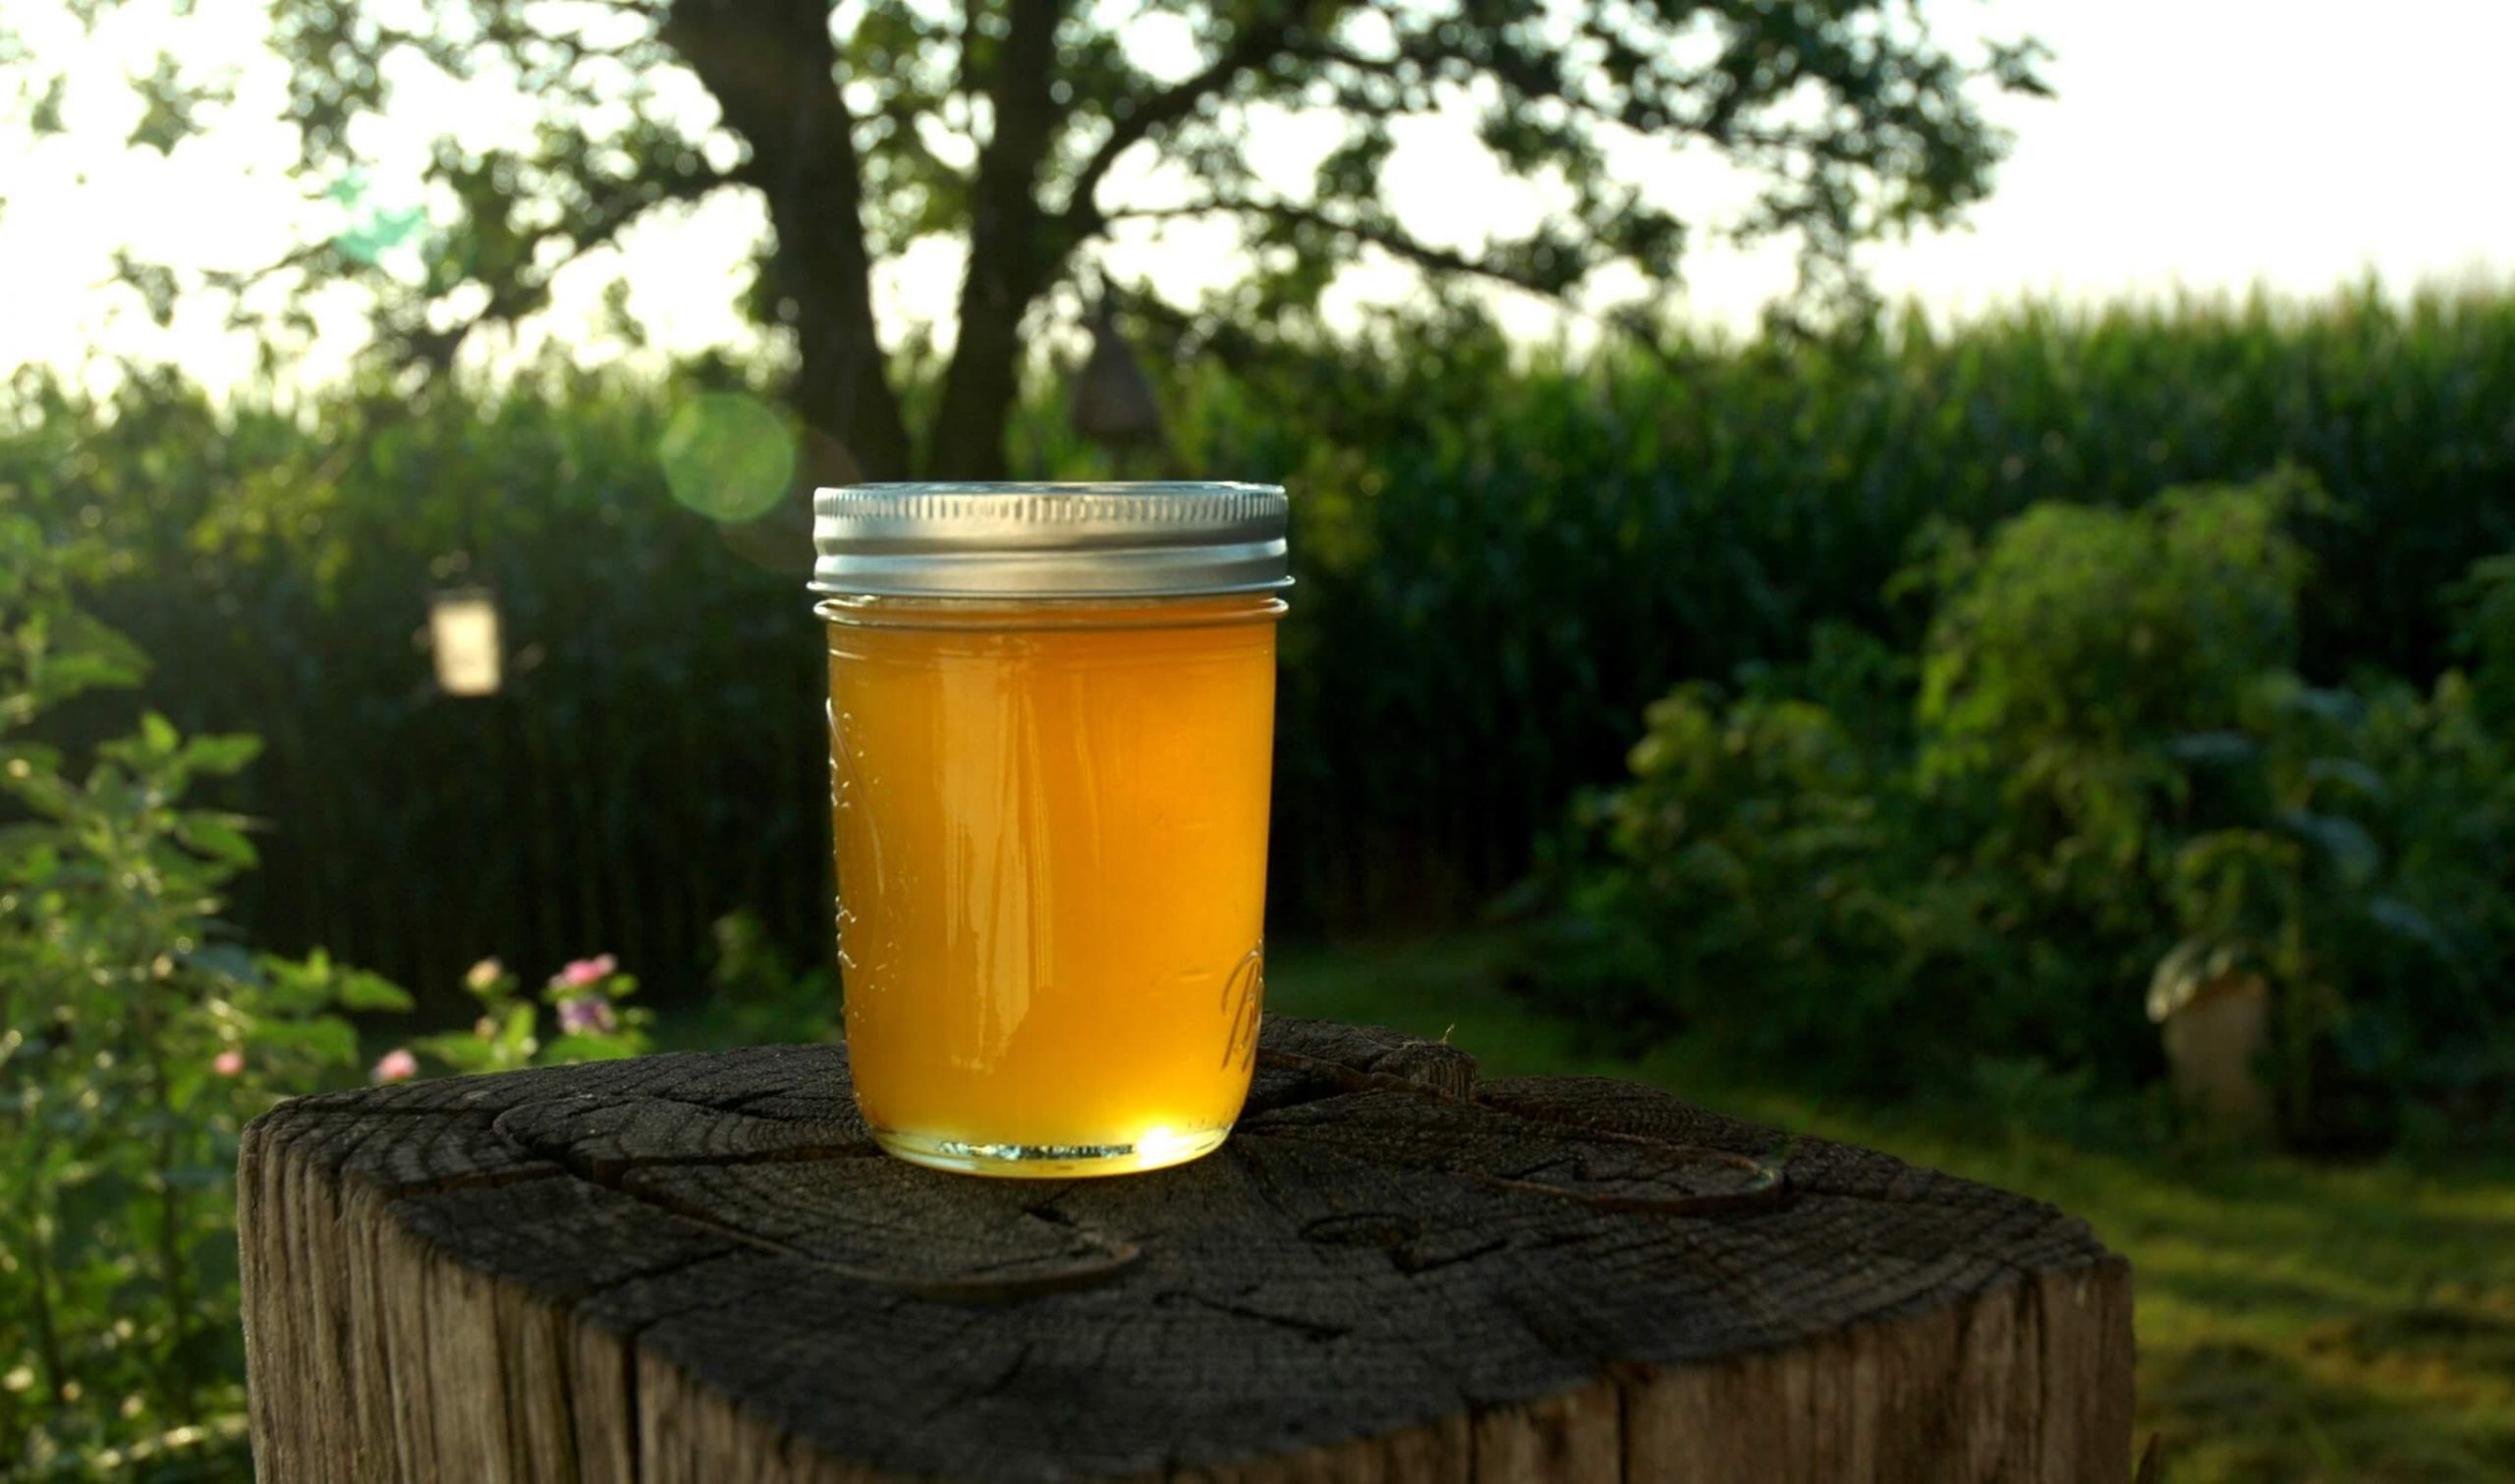 Mật ong nguyên chất: Chúng tôi tự hào cung cấp đến bạn mật ong nguyên chất, được thu hoạch tại vùng núi rừng phía Bắc. Với quy trình sản xuất và kiểm soát chất lượng khắt khe, chúng tôi đảm bảo mang đến cho bạn một sản phẩm tốt nhất cho sức khỏe và khẩu vị của bạn.